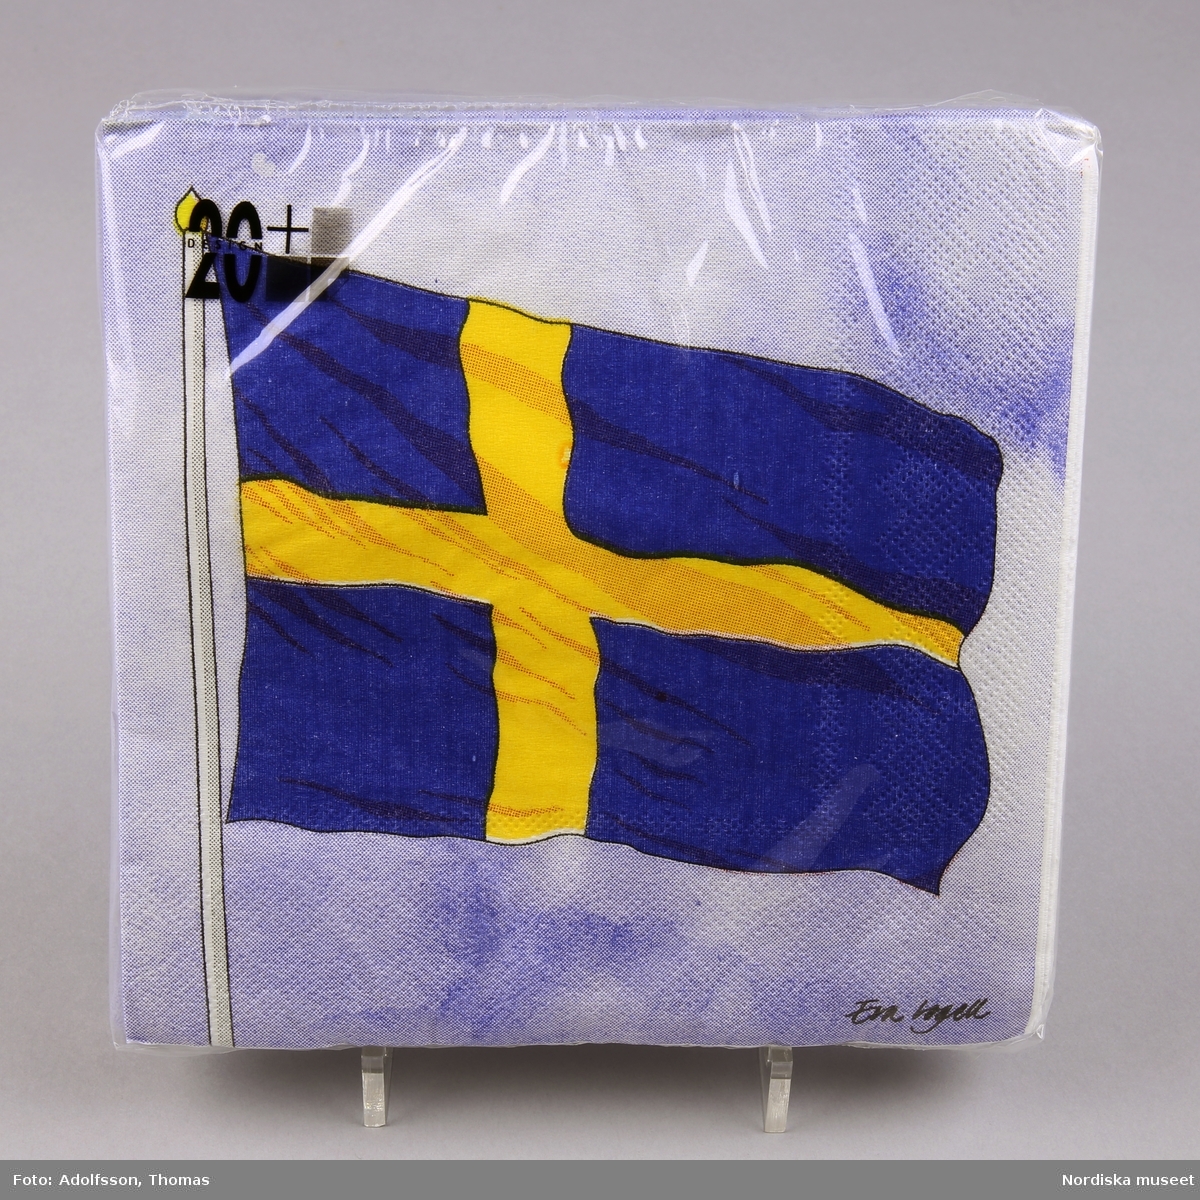 Pappersservetter. Obruten förpackning med 20 servetter. Dekorerade med svenska flaggan och toppen av en flaggstång.

/C Hammarlund-Larsson 2019-01-25